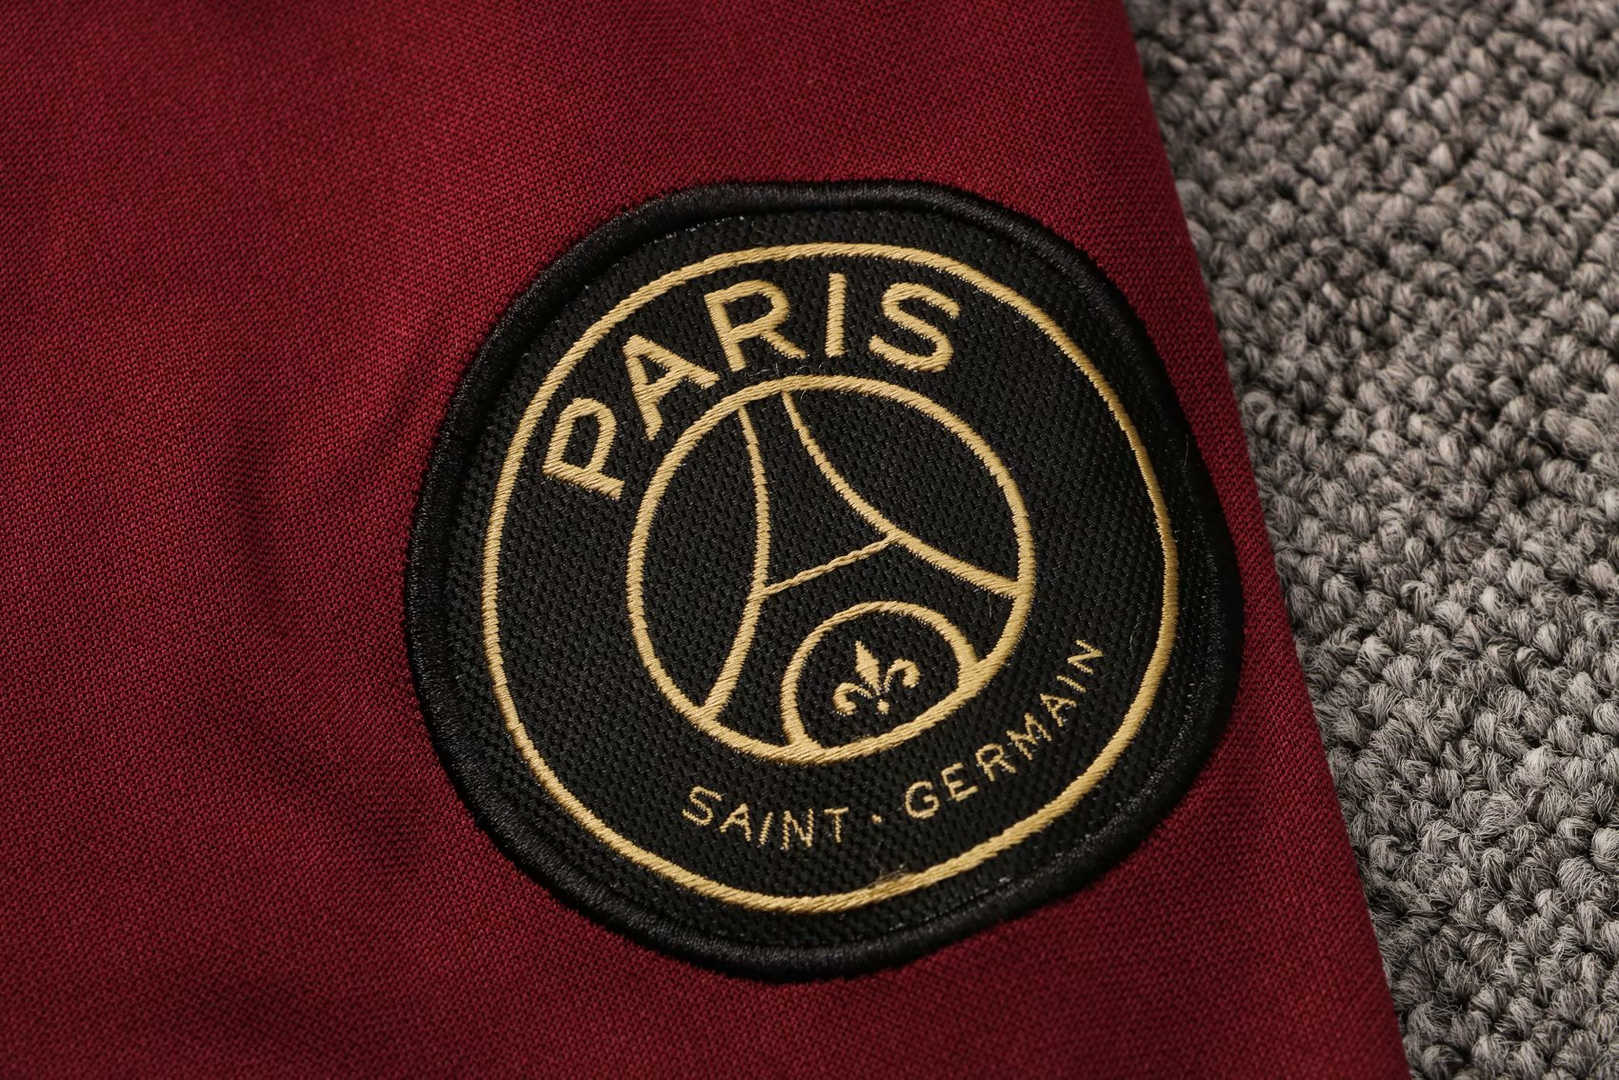 2020/21 PSG x Jordan Hoodie Burgundy Soccer Training Suit (Jacket + Pants) Mens 